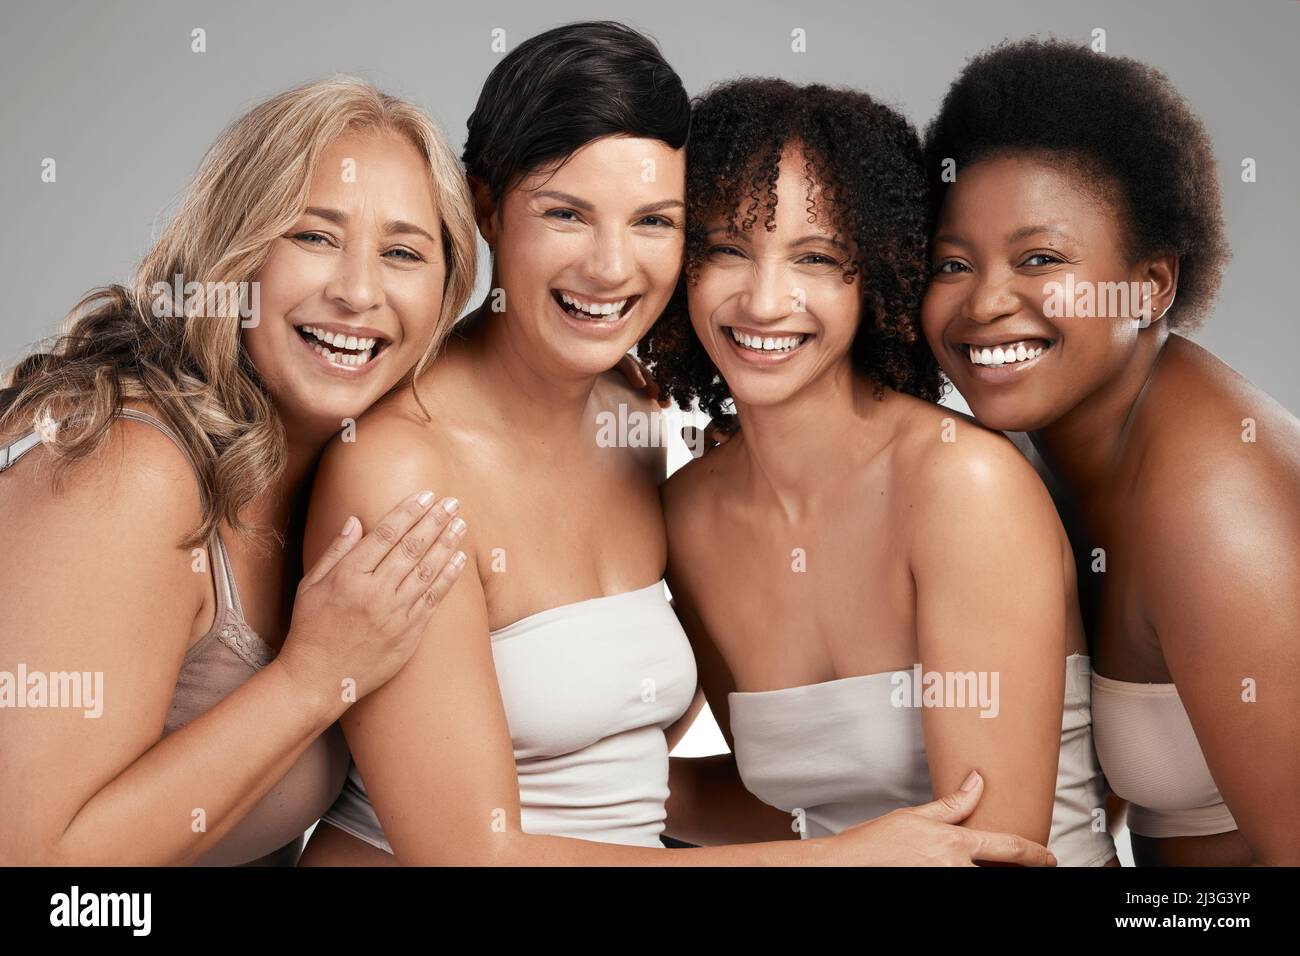 Eh bien ne partagez jamais nos secrets de beauté. Prise de vue d'un groupe diversifié de femmes debout et s'embrassant dans le studio. Banque D'Images